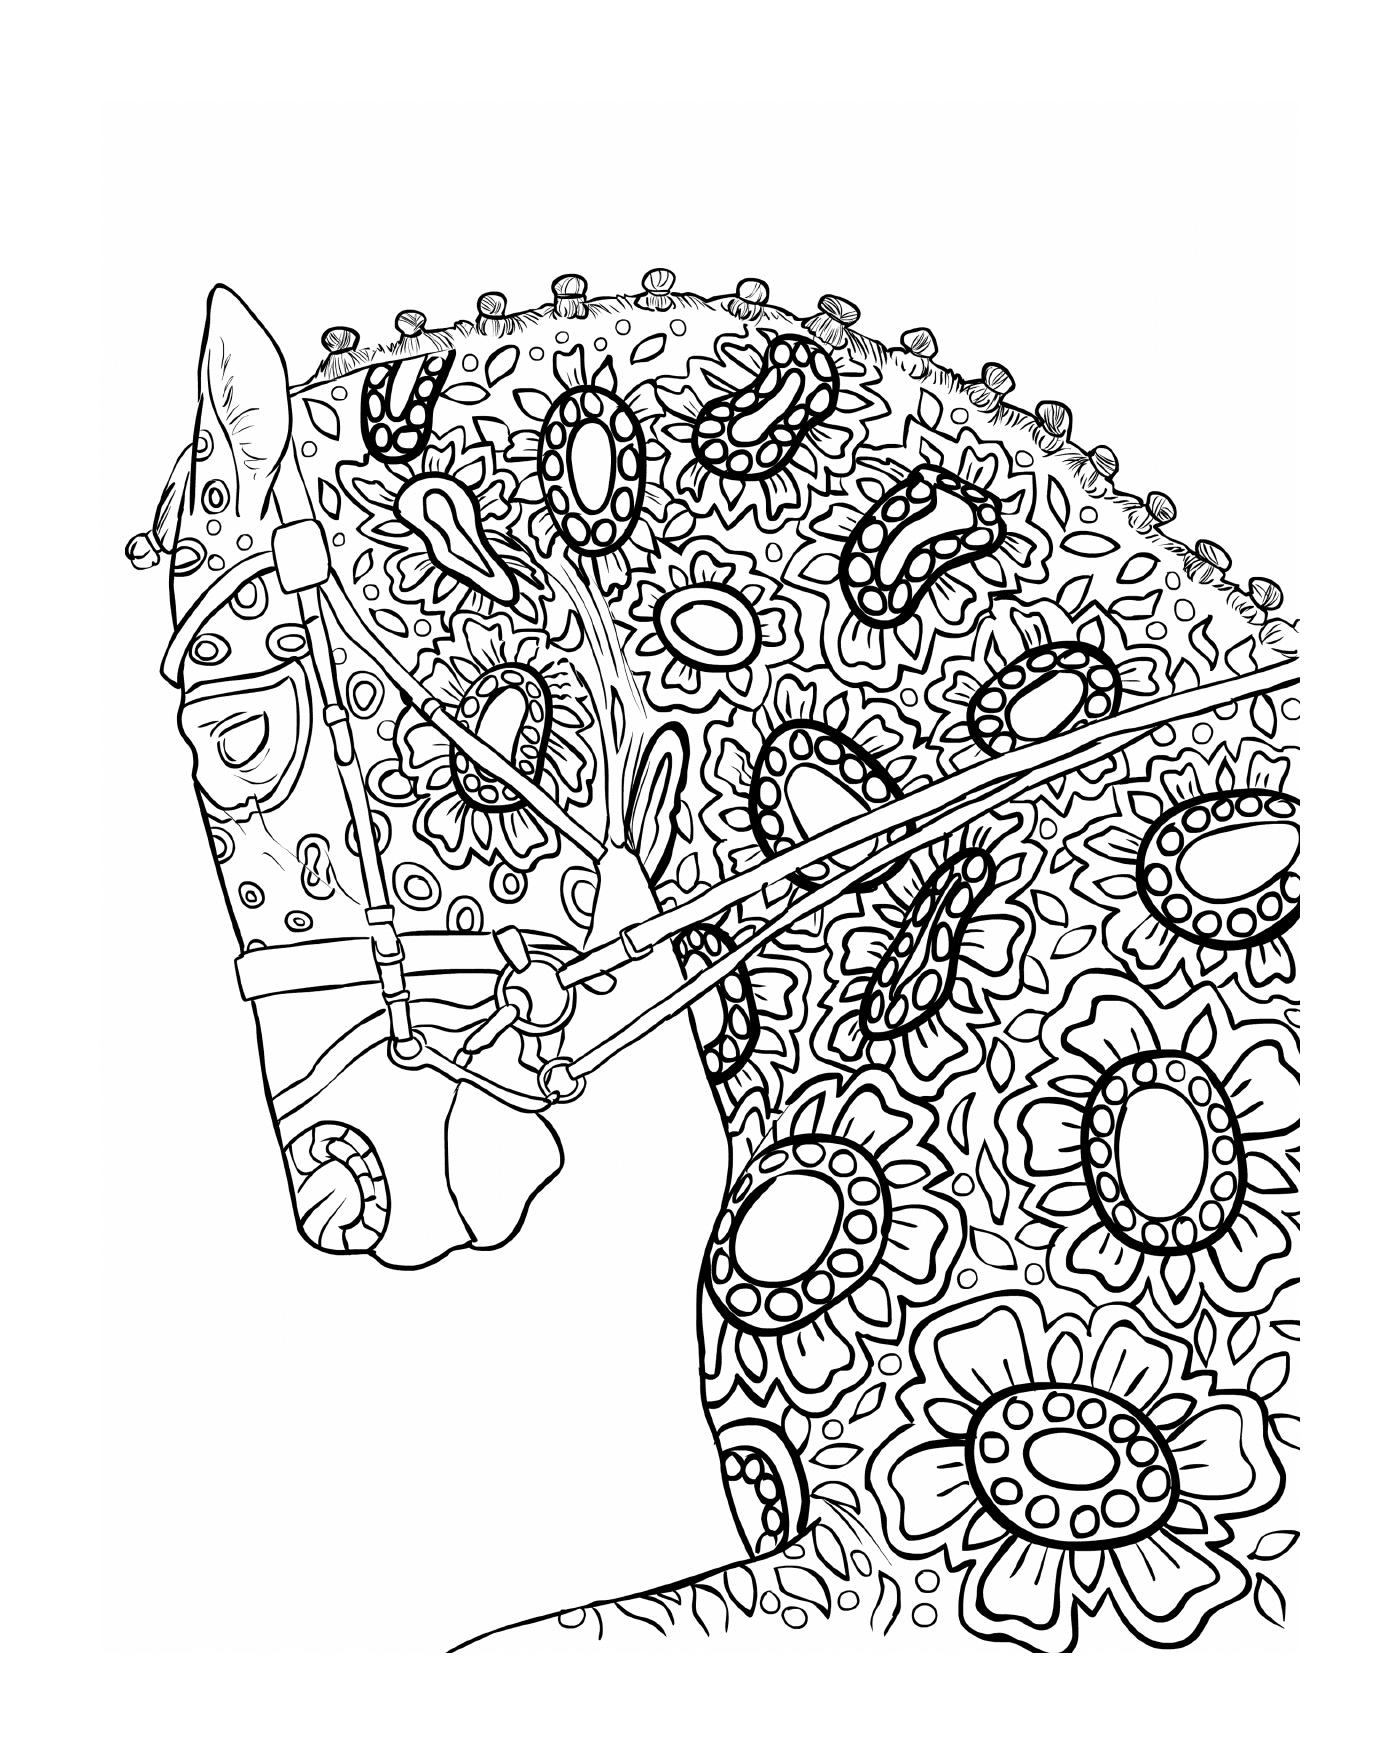  Der Kopf eines Pferdes mit floralen Motiven 